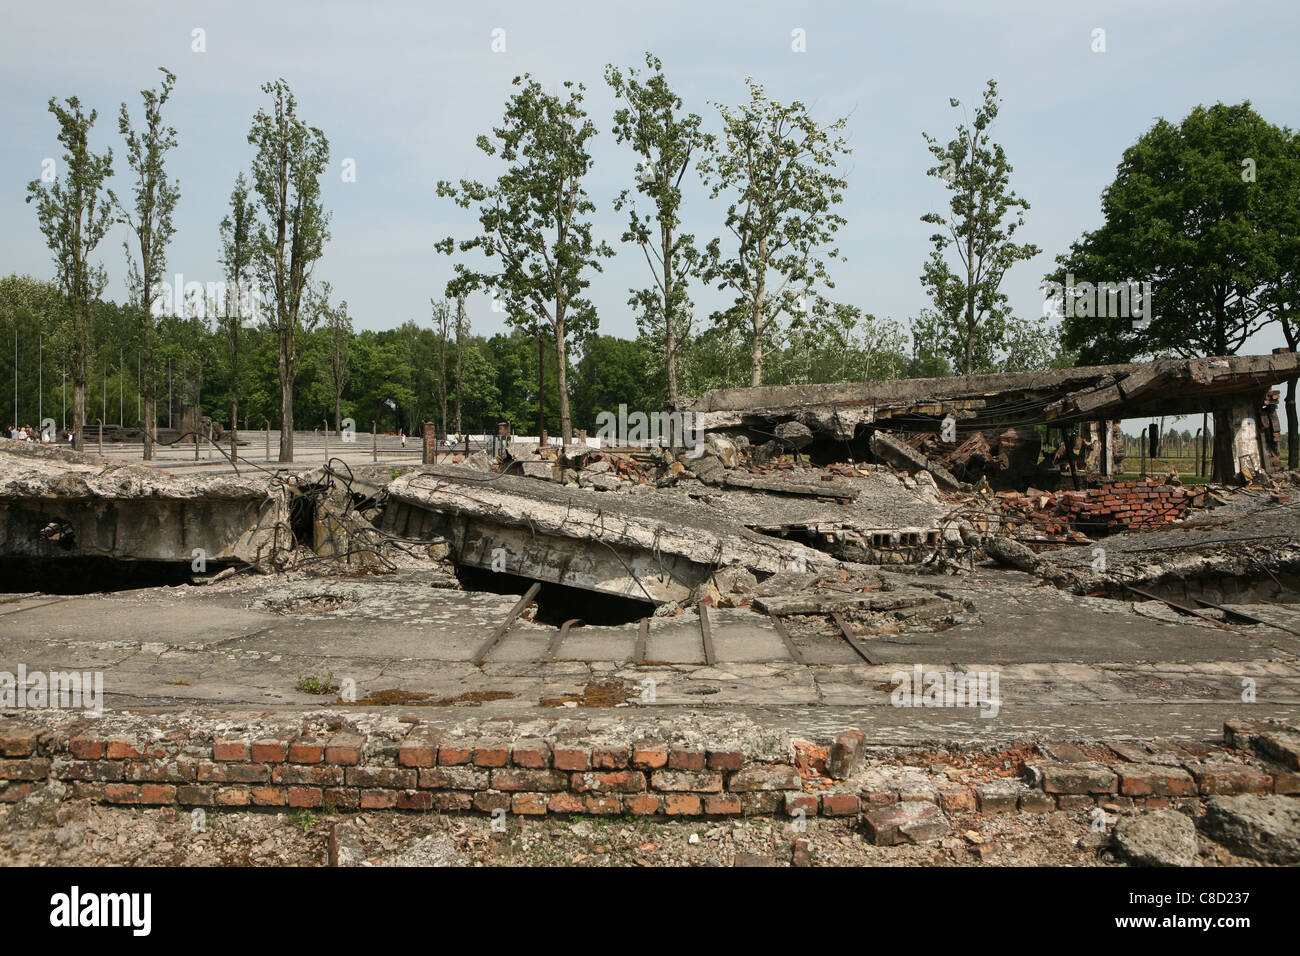 Ruines du crématorium de l'Auschwitz II Birkenau allemand nazi de concentration et d'extermination camp à Oswiecim, Pologne. Banque D'Images